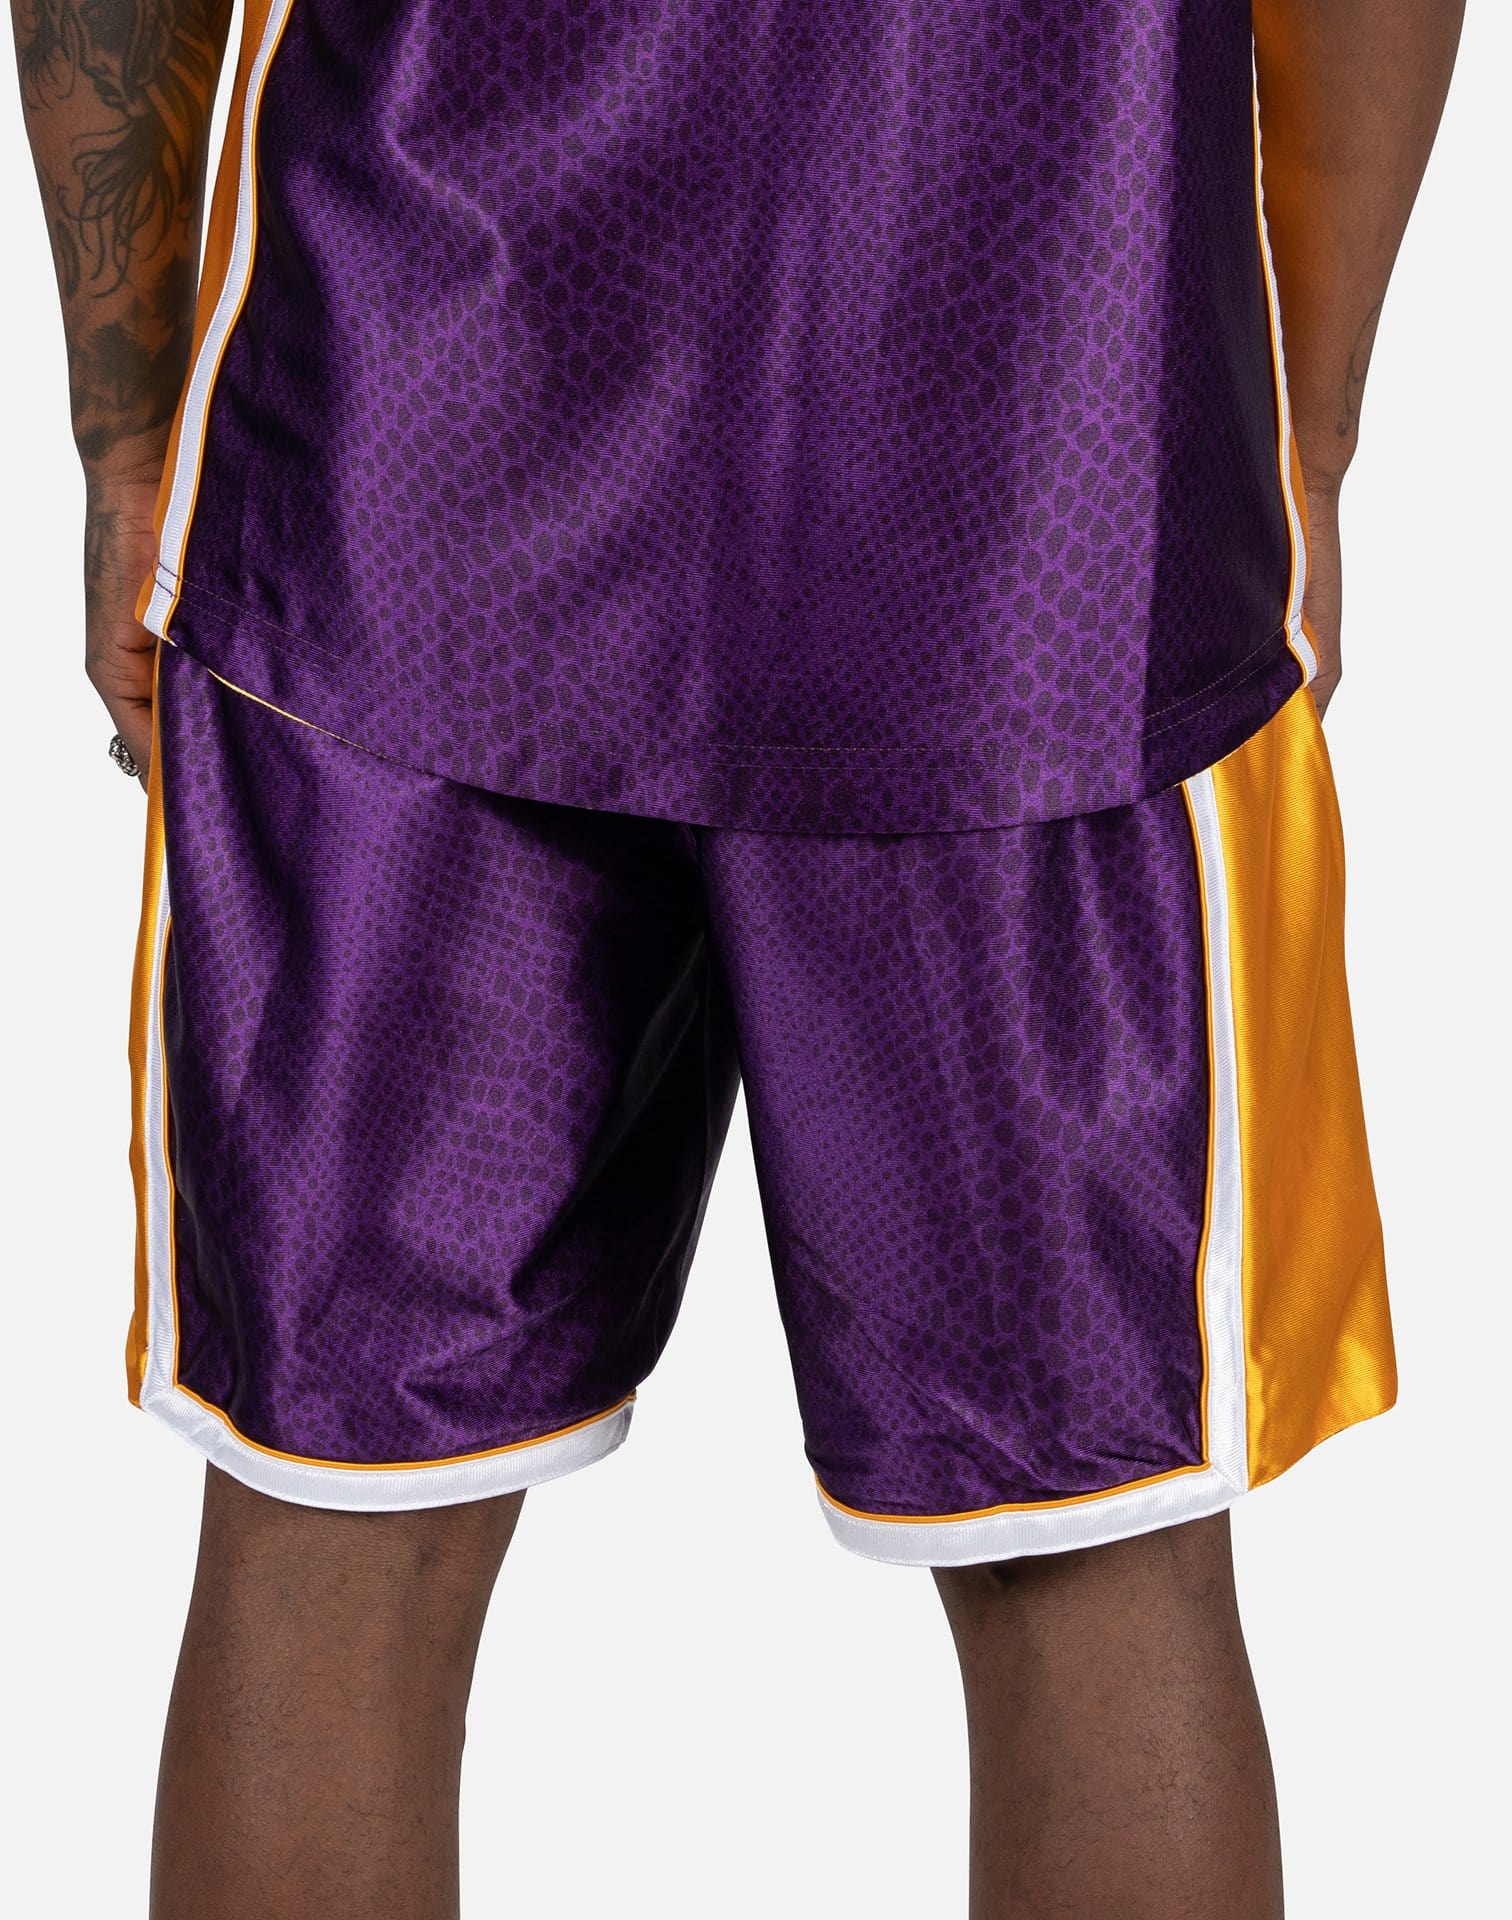 8 Kobe Bryant Shorts - Skullridding